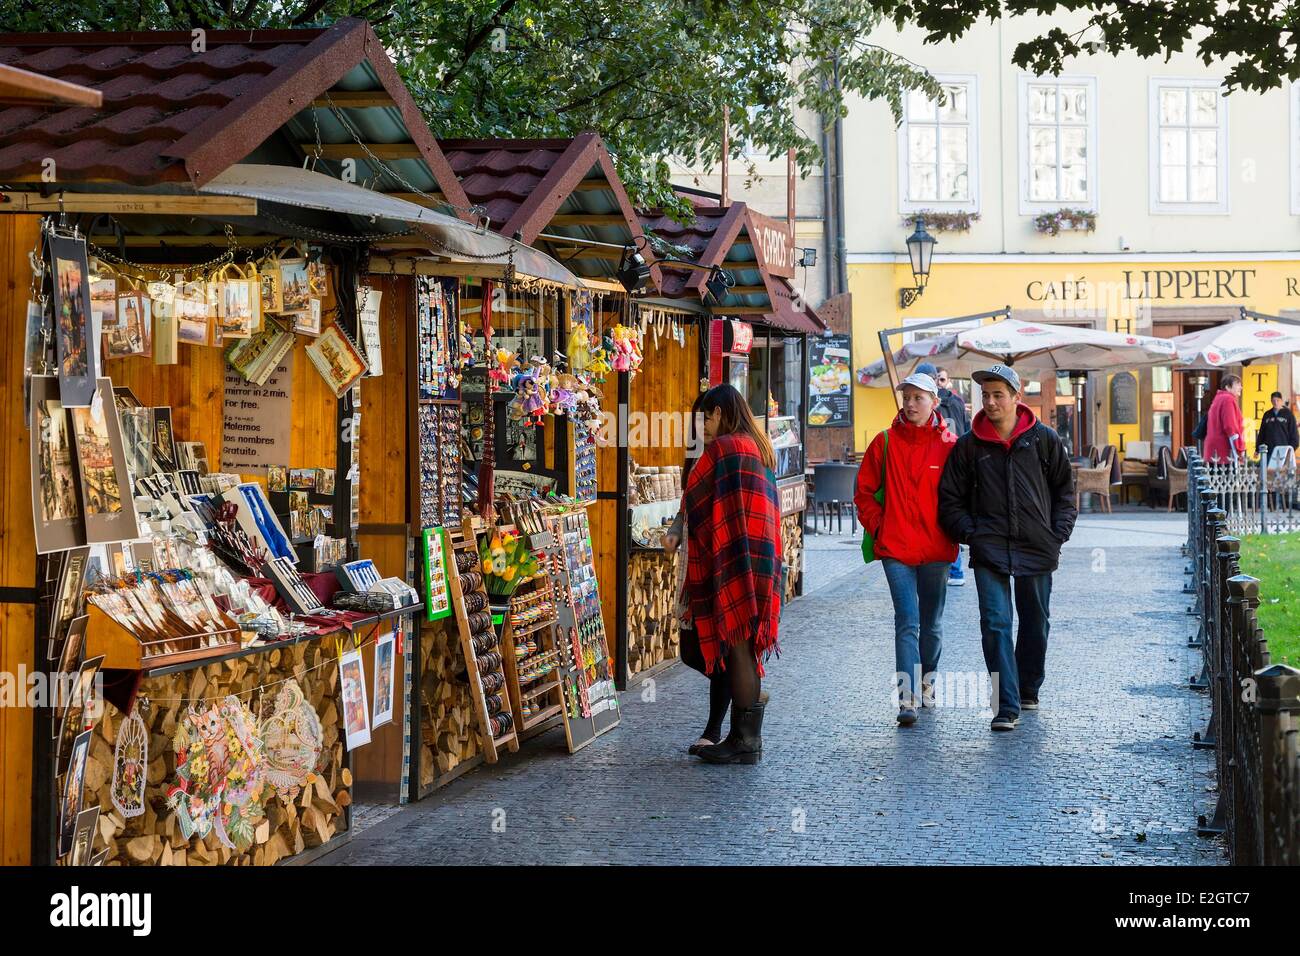 República Checa Praga centro histórico catalogado como Patrimonio Mundial por la UNESCO en la vieja plaza de mercado Foto de stock